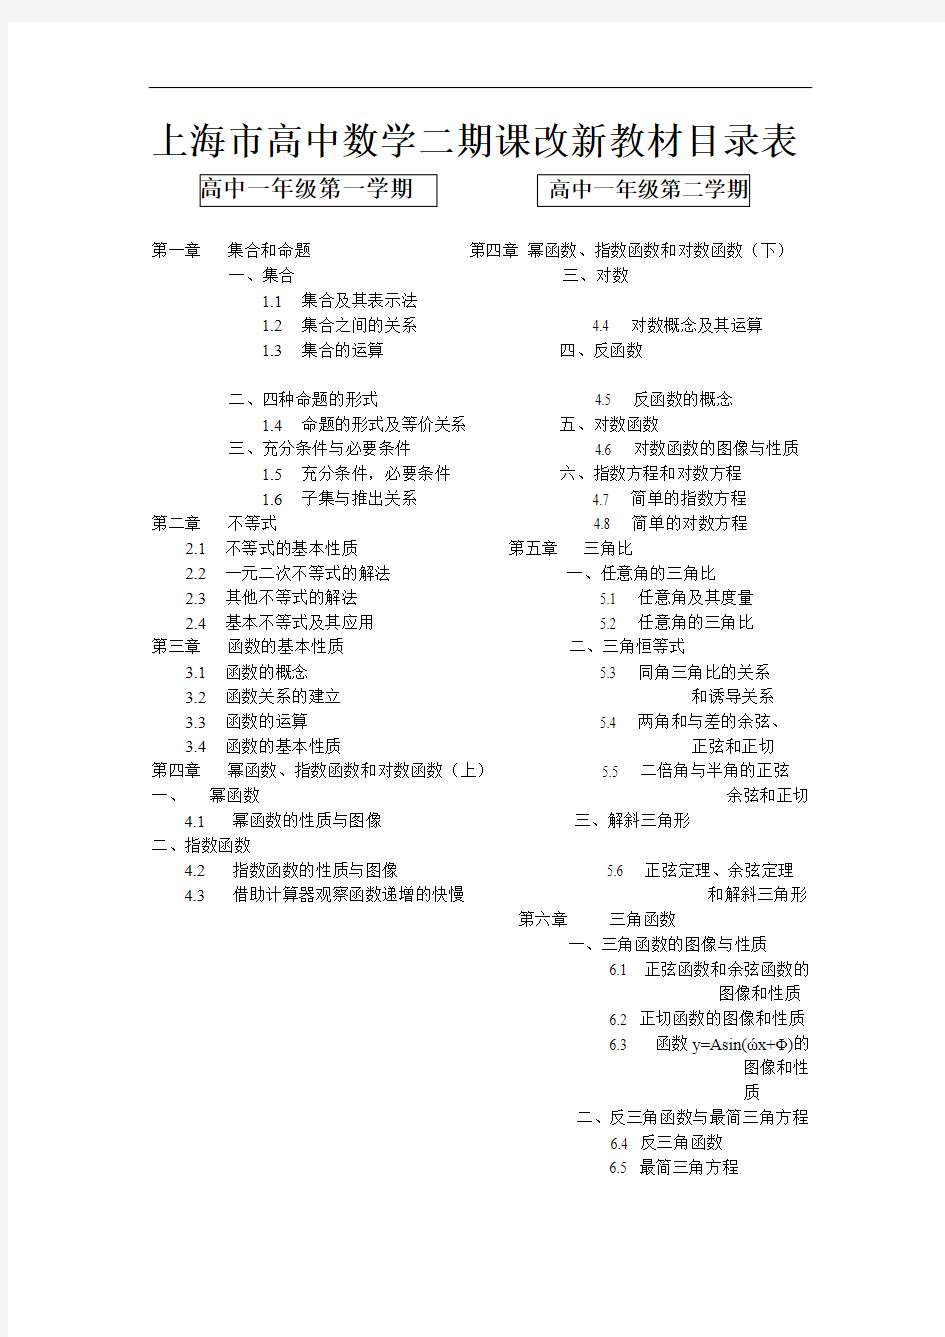 上海高中数学教材目录表(2017.08.12)(最新整理)